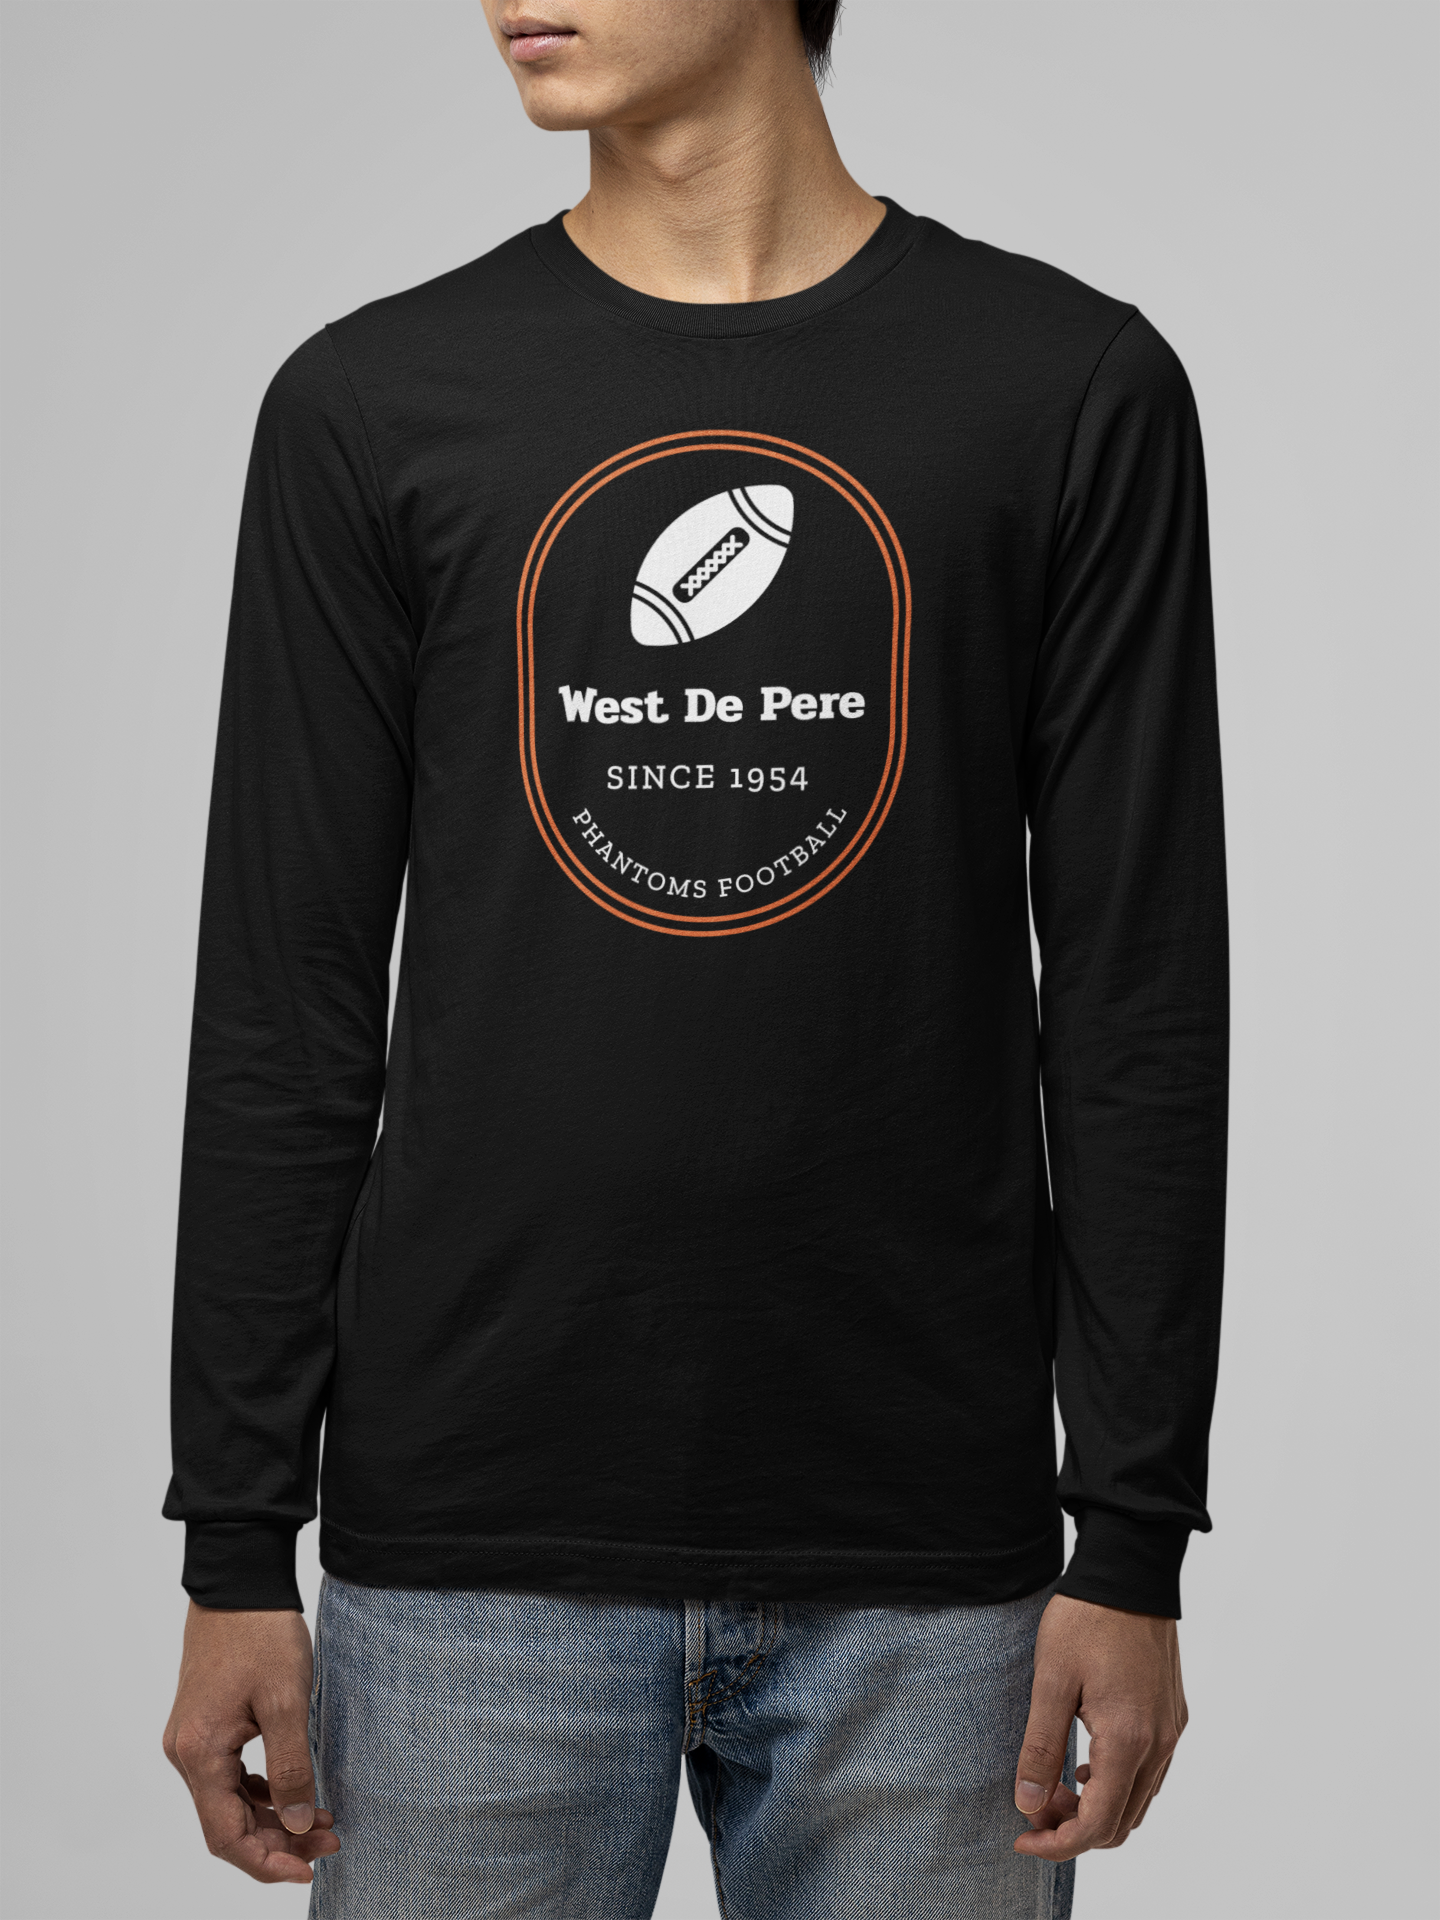 West De Pere Phantoms Football Merch - Tees, Long Sleeve Tee, Crewneck or Hoodie - Since 1954